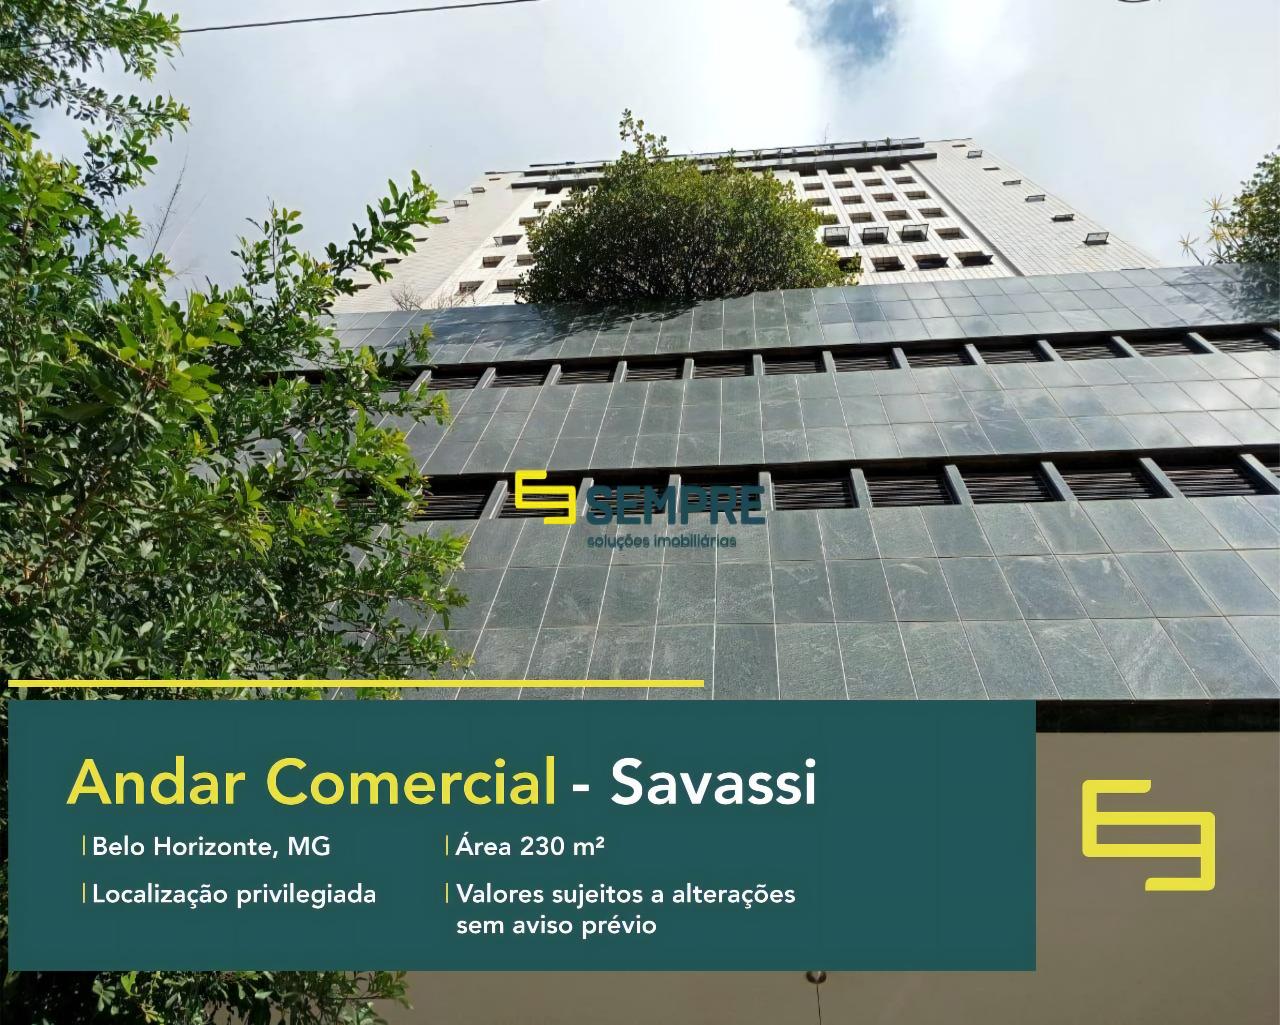 Andar comercial em BH para alugar no bairro Savassi, em excelente localização. O estabelecimento comercial conta com área de 230 m².